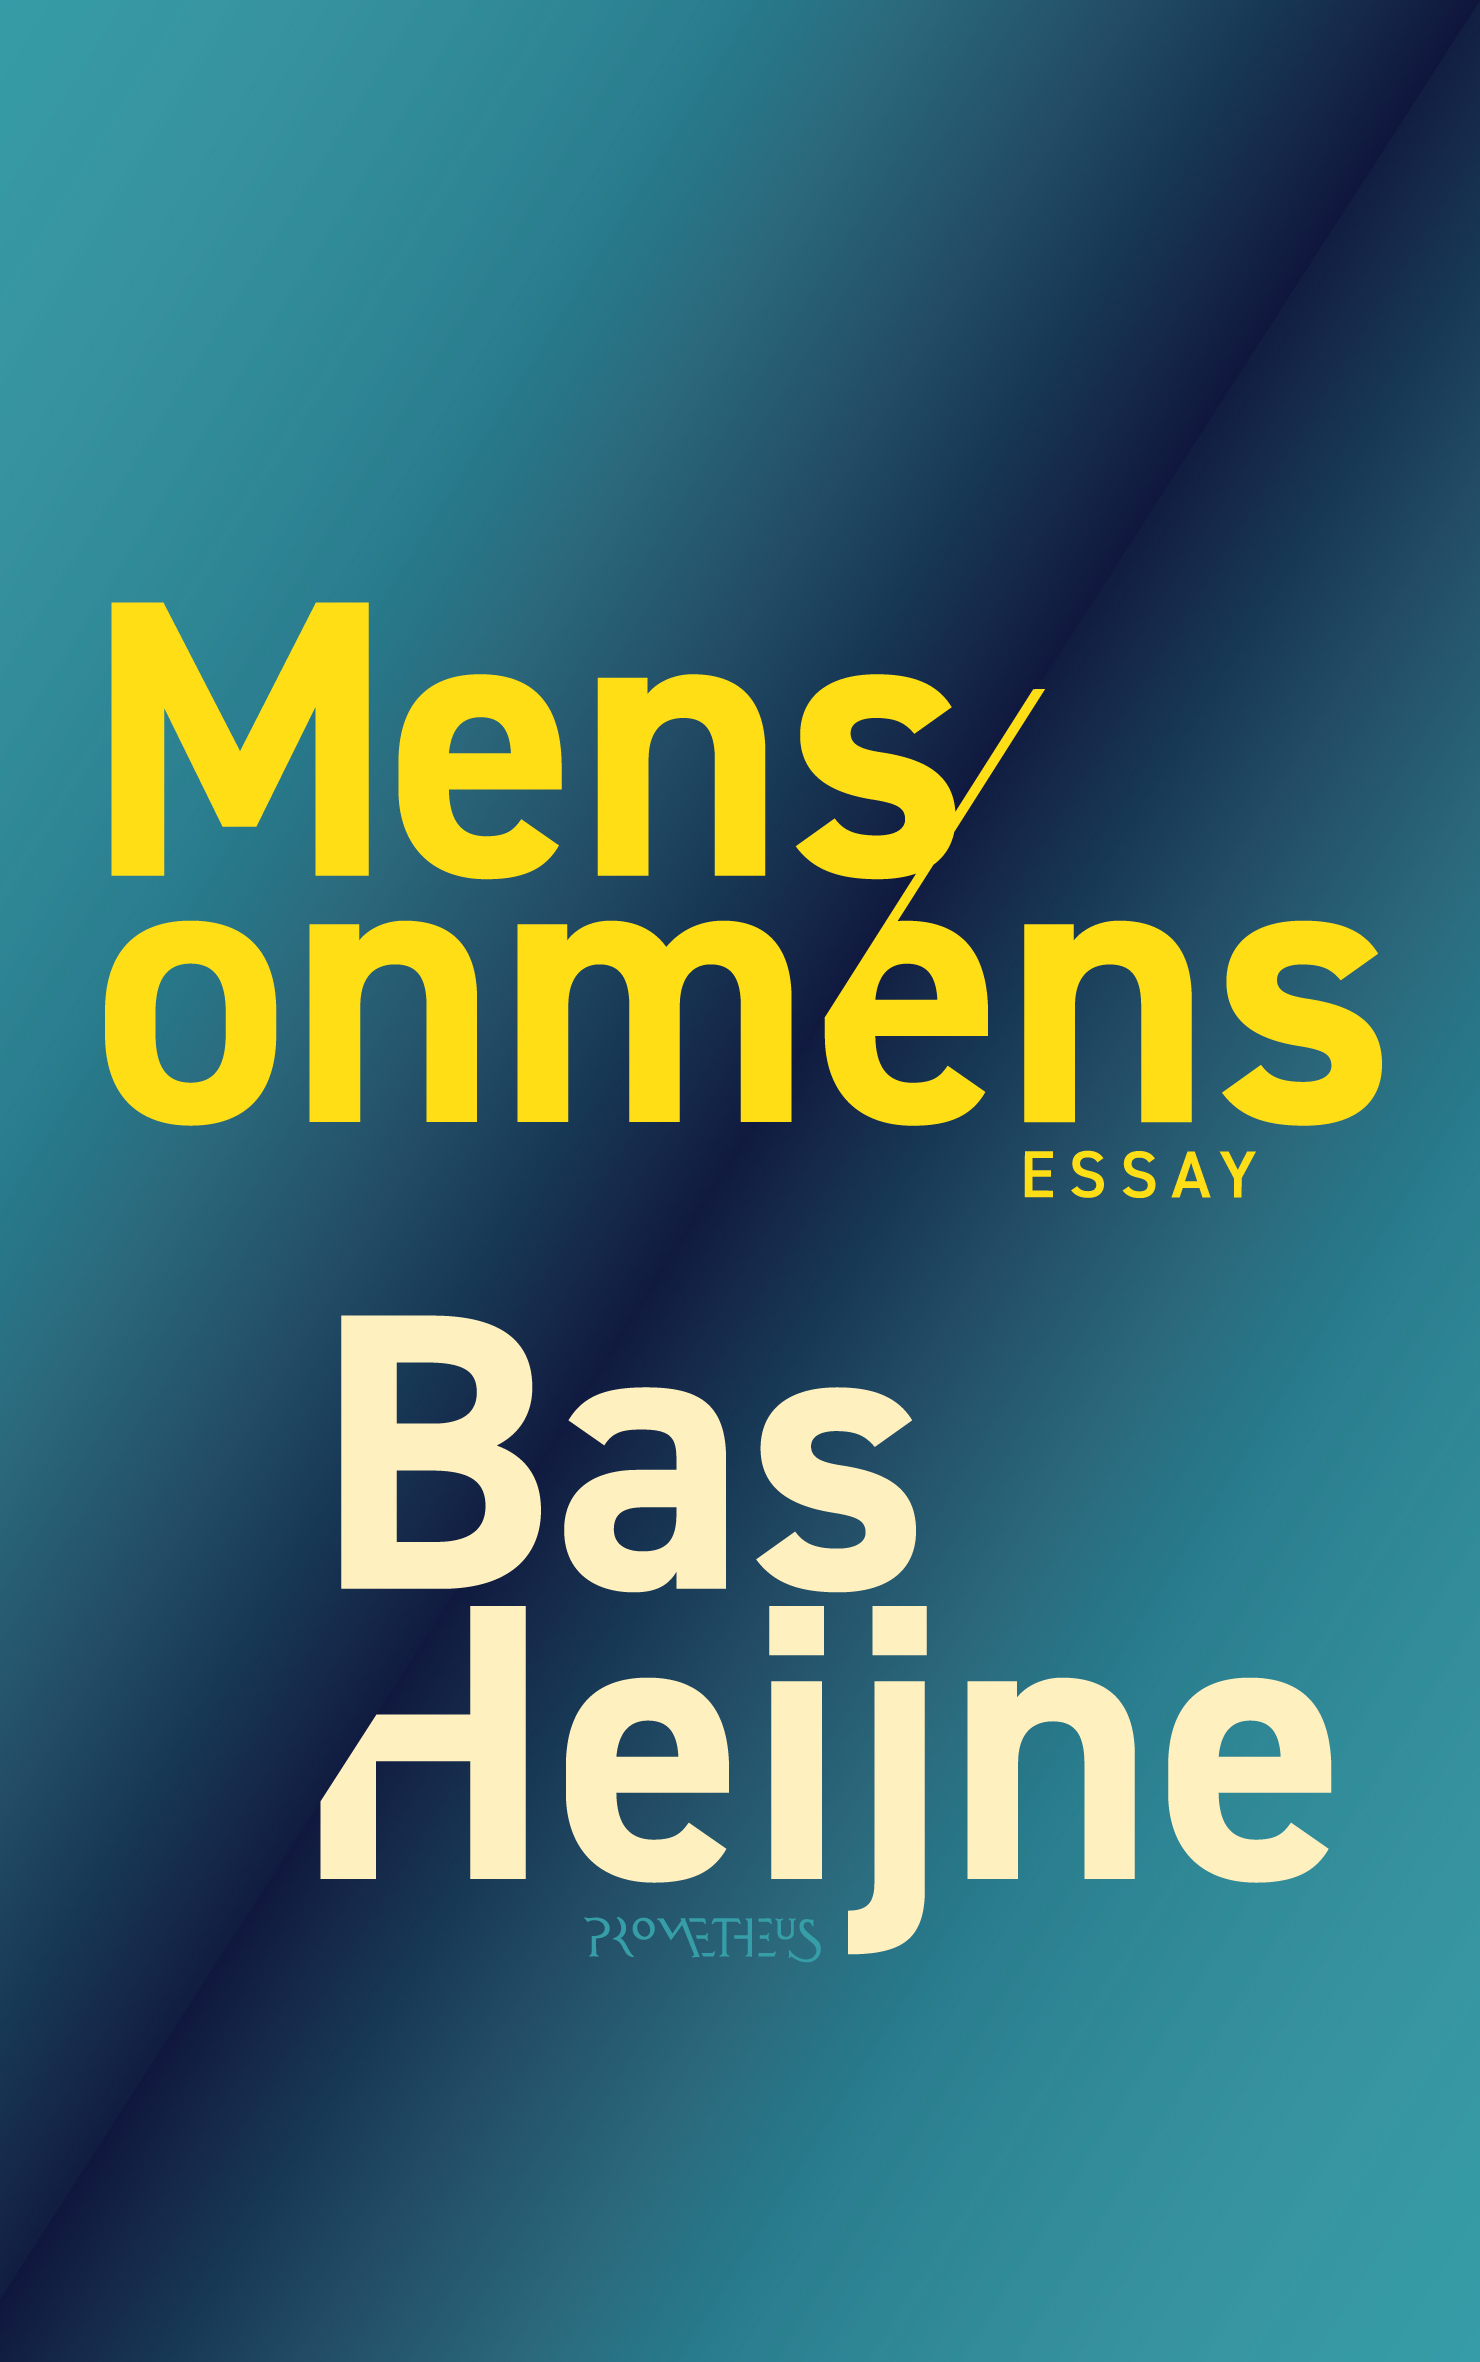 CMRB - Bas Heijne - Mens_onmens - aanbieding_2b